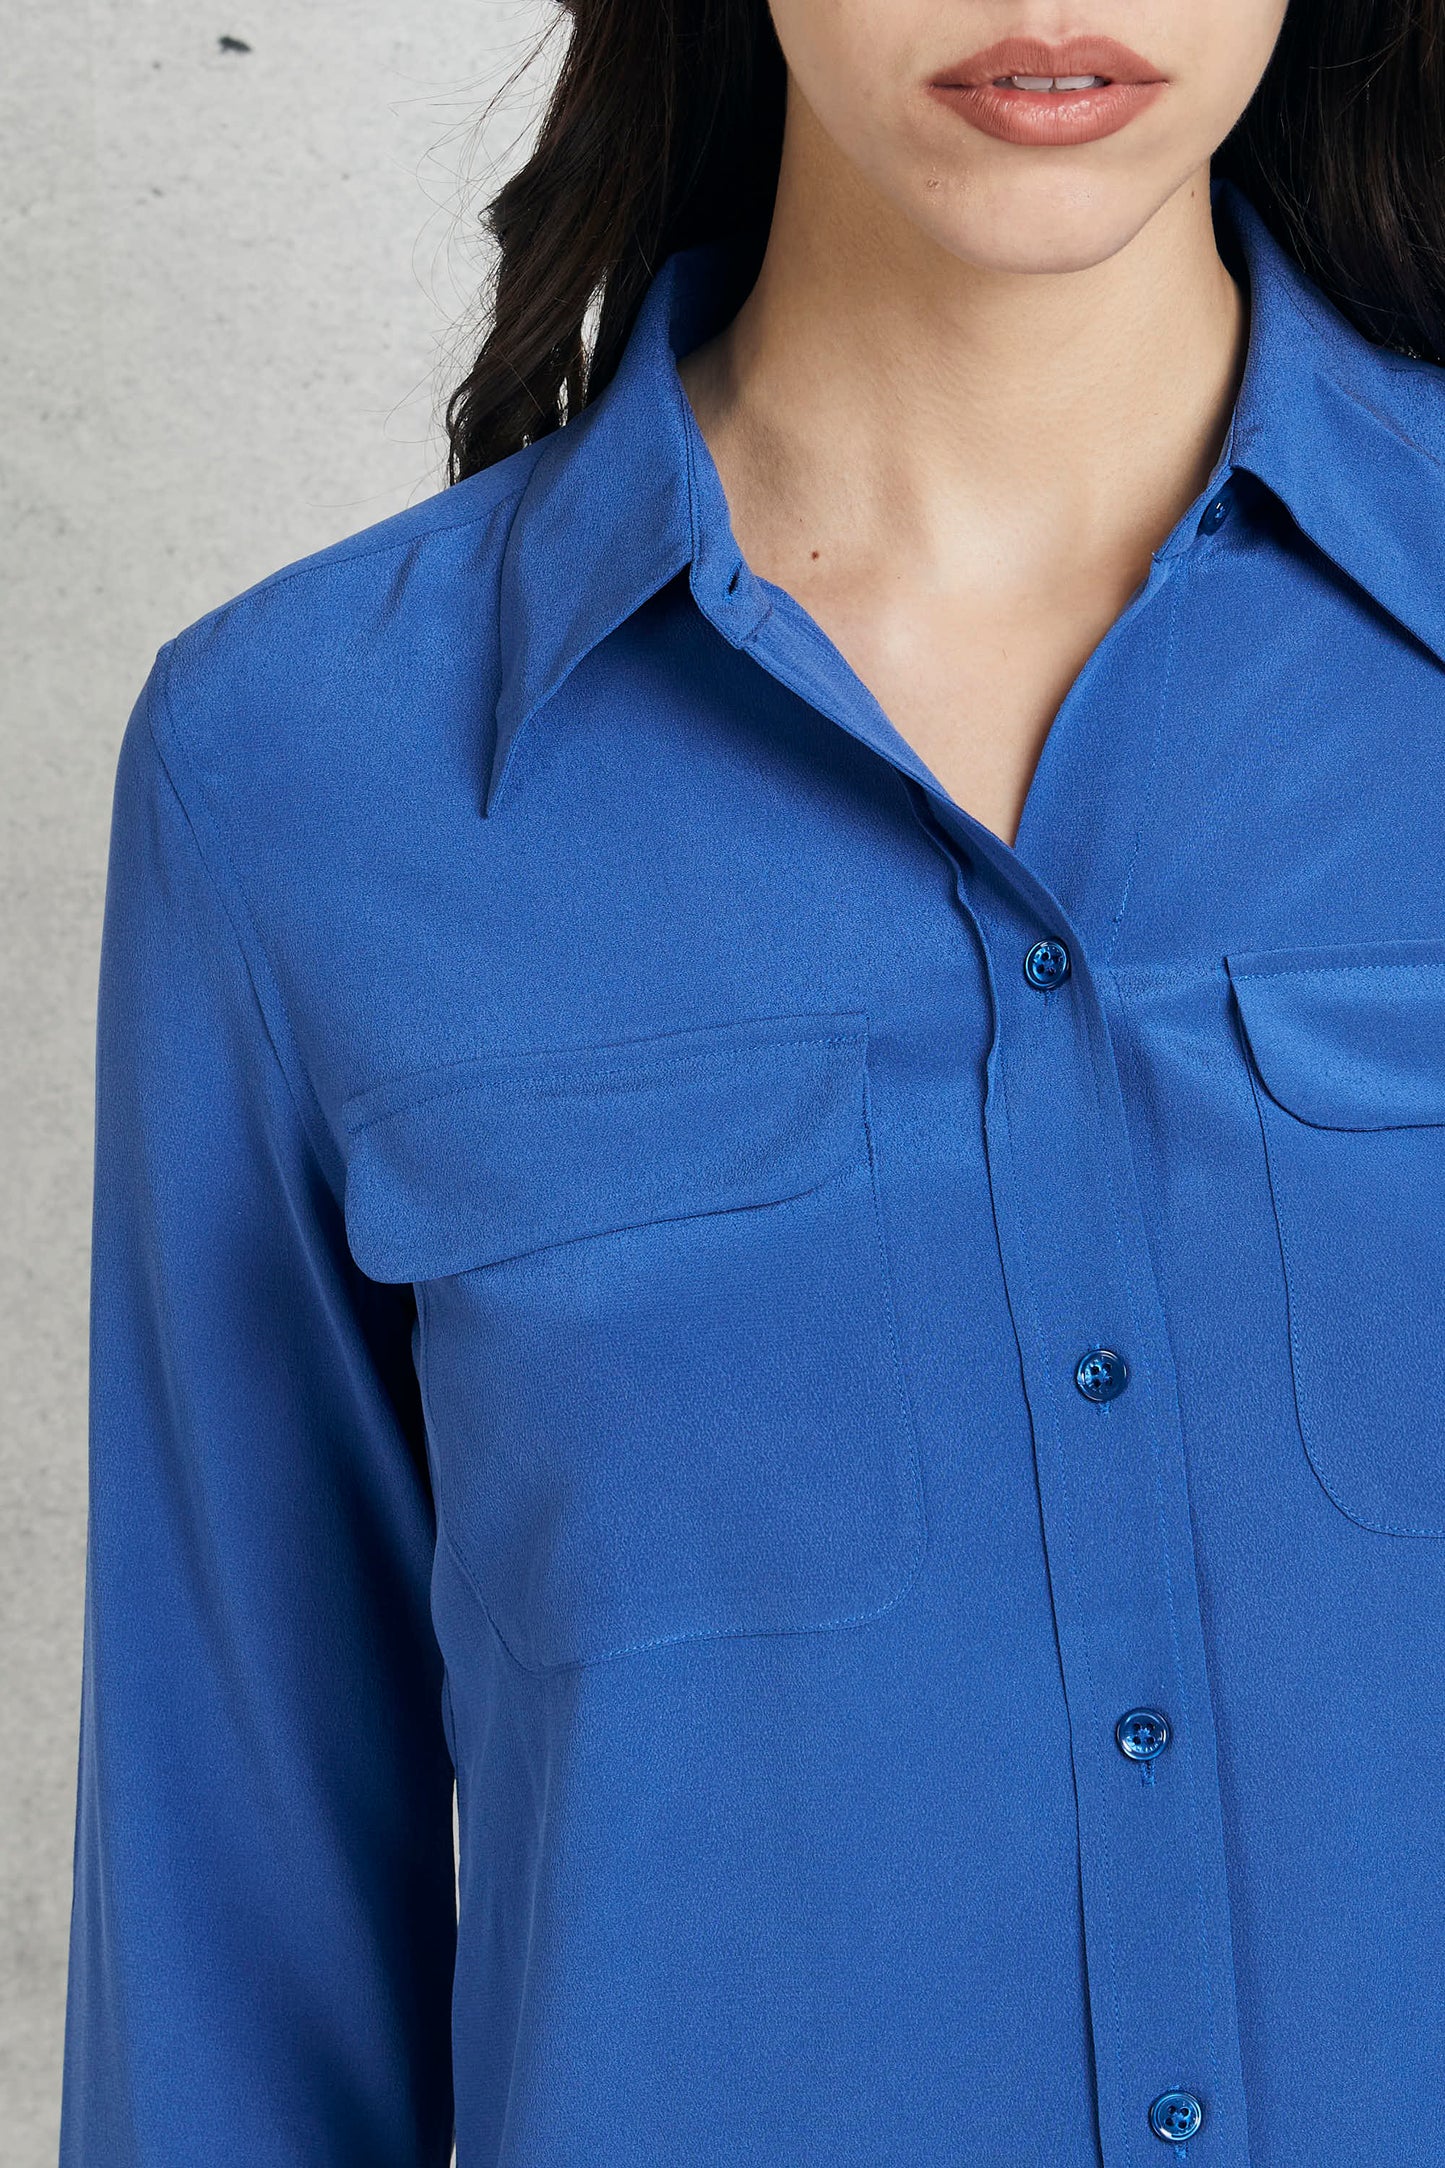  Equipment Femme Blue Silk Shirt For Women Blu Donna - 6